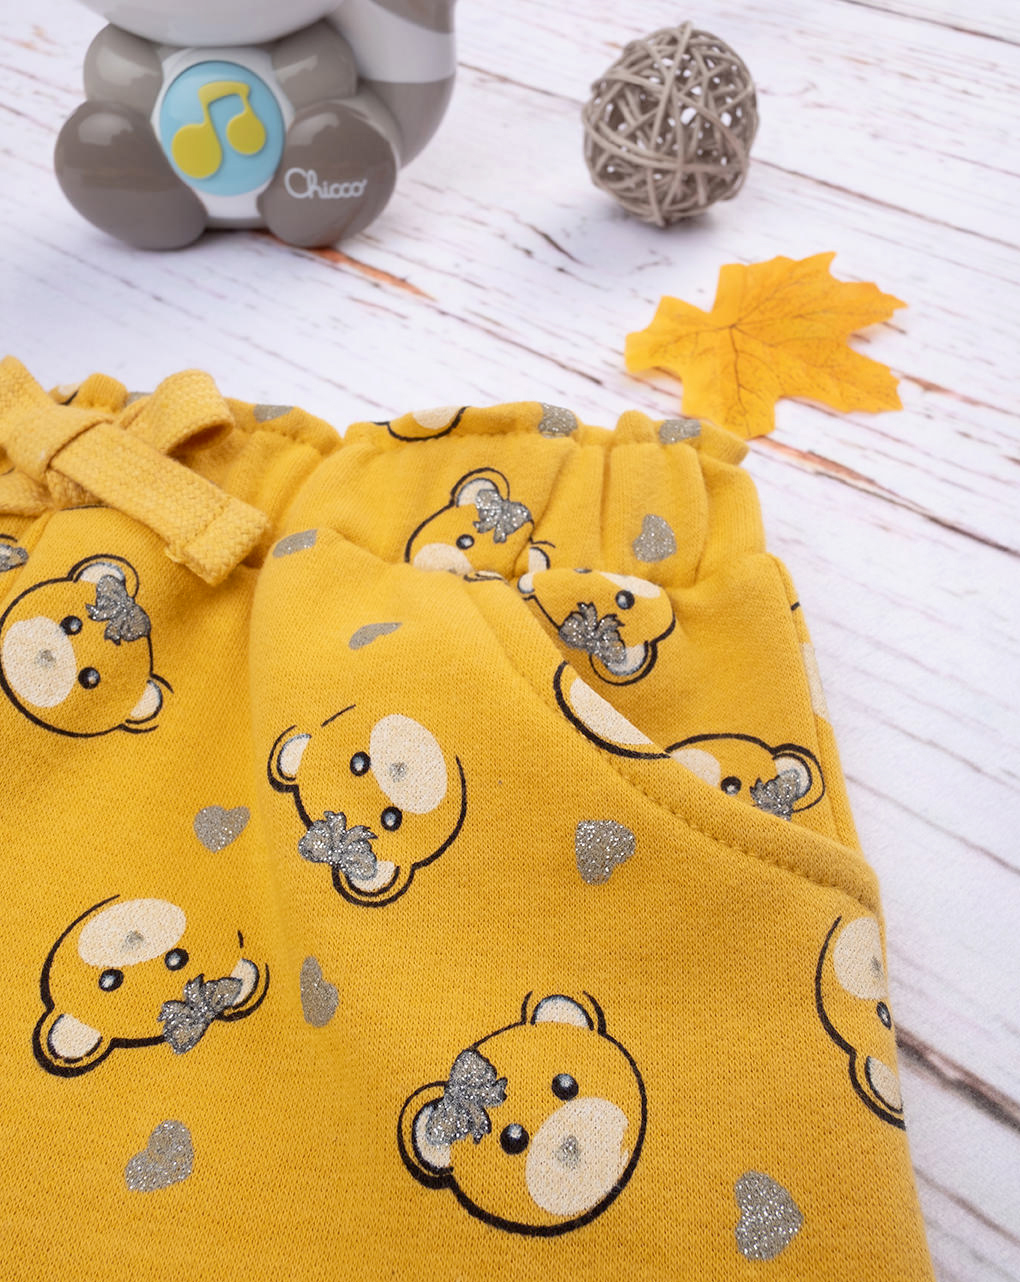 Pantalones "oso" para niña, de color amarillo - Prénatal